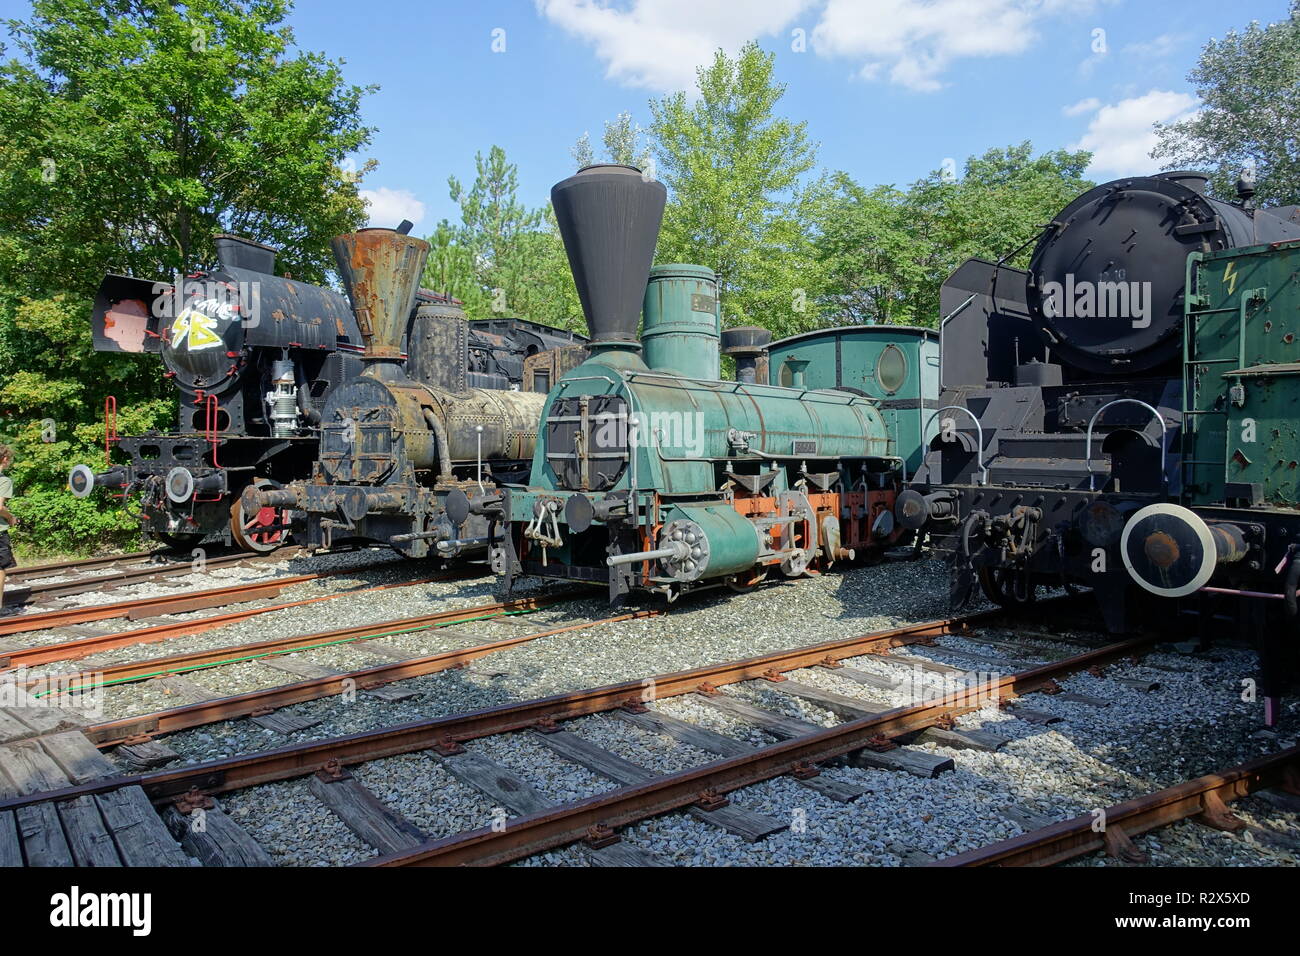 Alte, historische Dampflokomotiven im Eisenbahnmuseum Strasshof, Österreich - Vintage Dampfloks im Eisenbahnmuseum Strasshof in Österreich Stockfoto